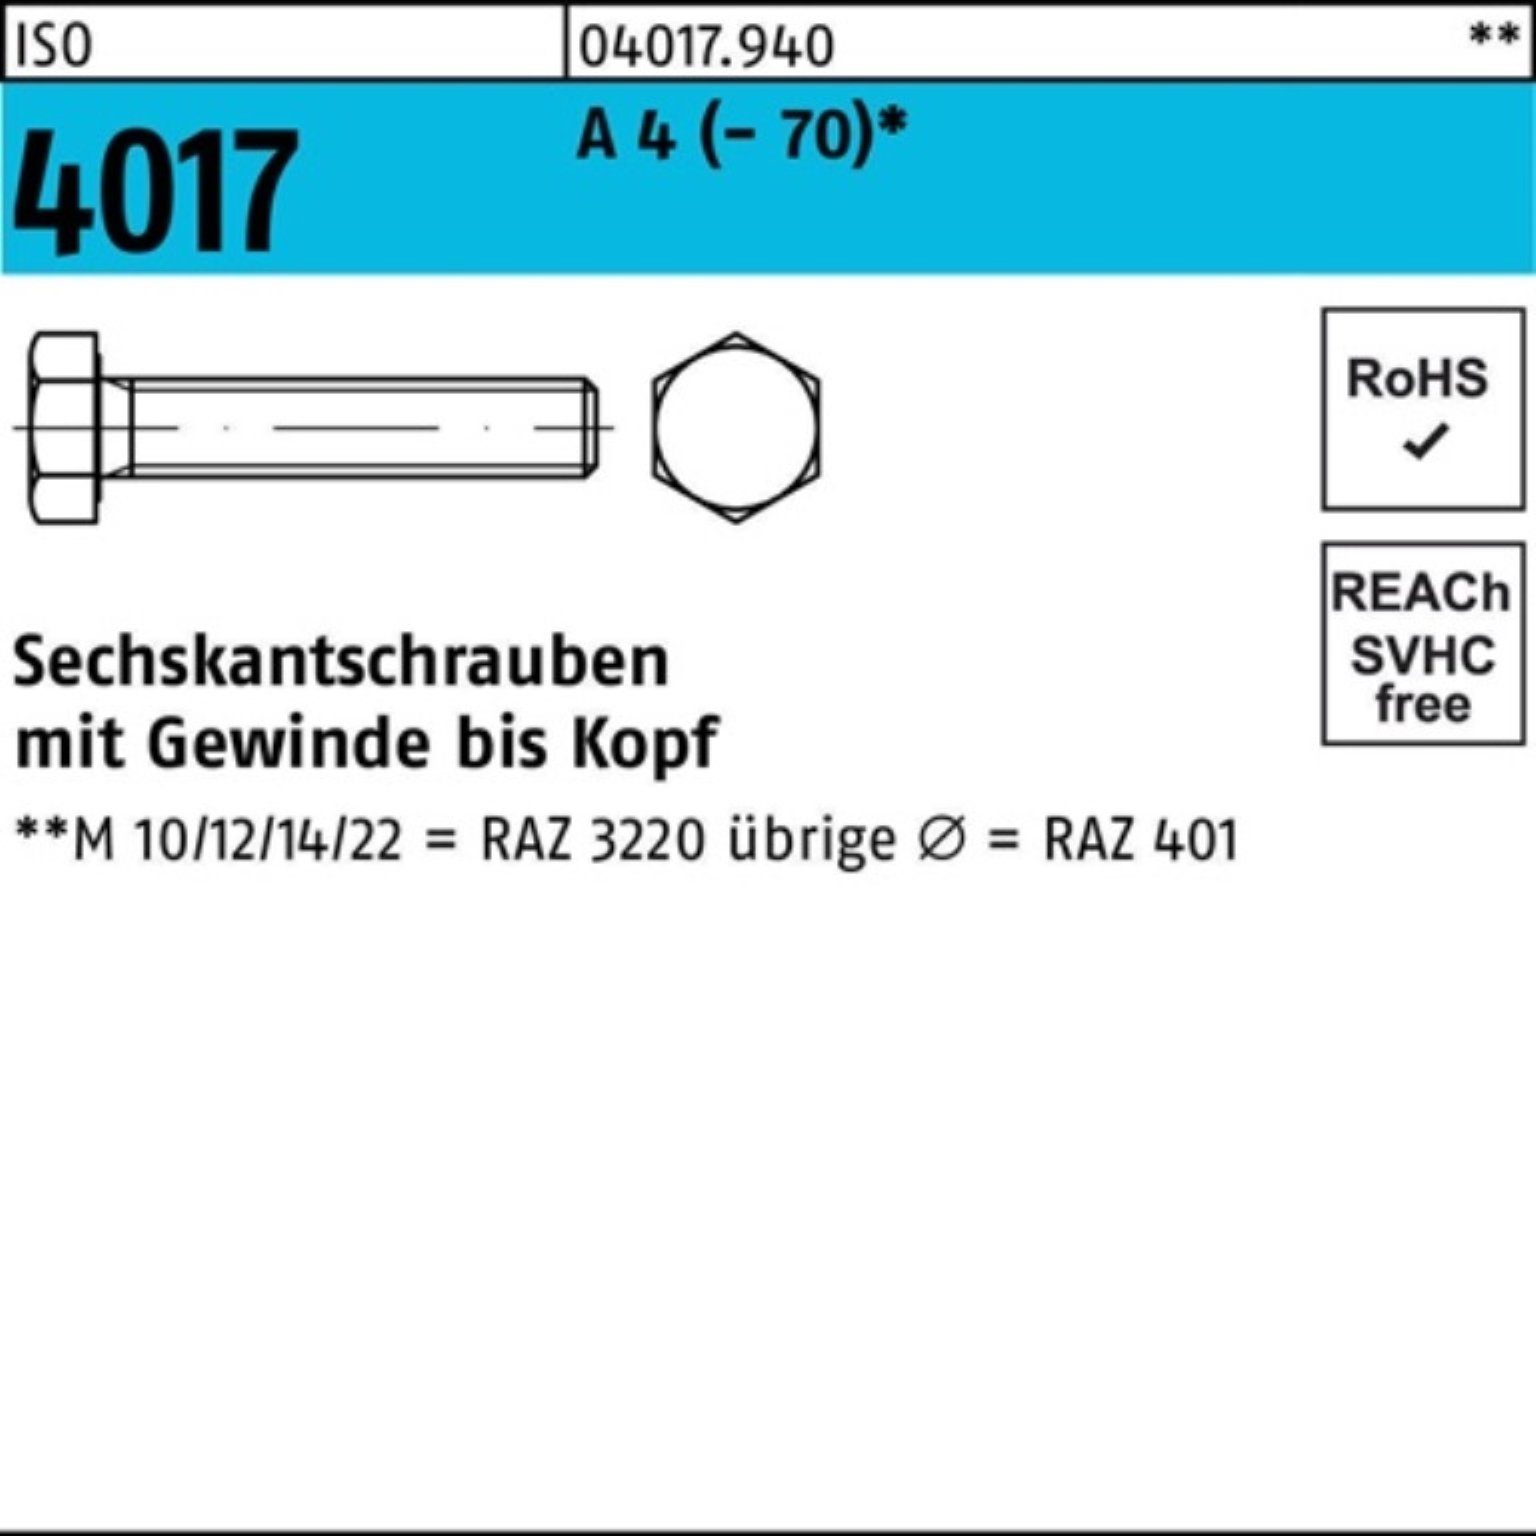 4017 Stück Sechskantschraube M8x A 4 100er (70) VG ISO Sechskantschraube Bufab 100 55 Pack